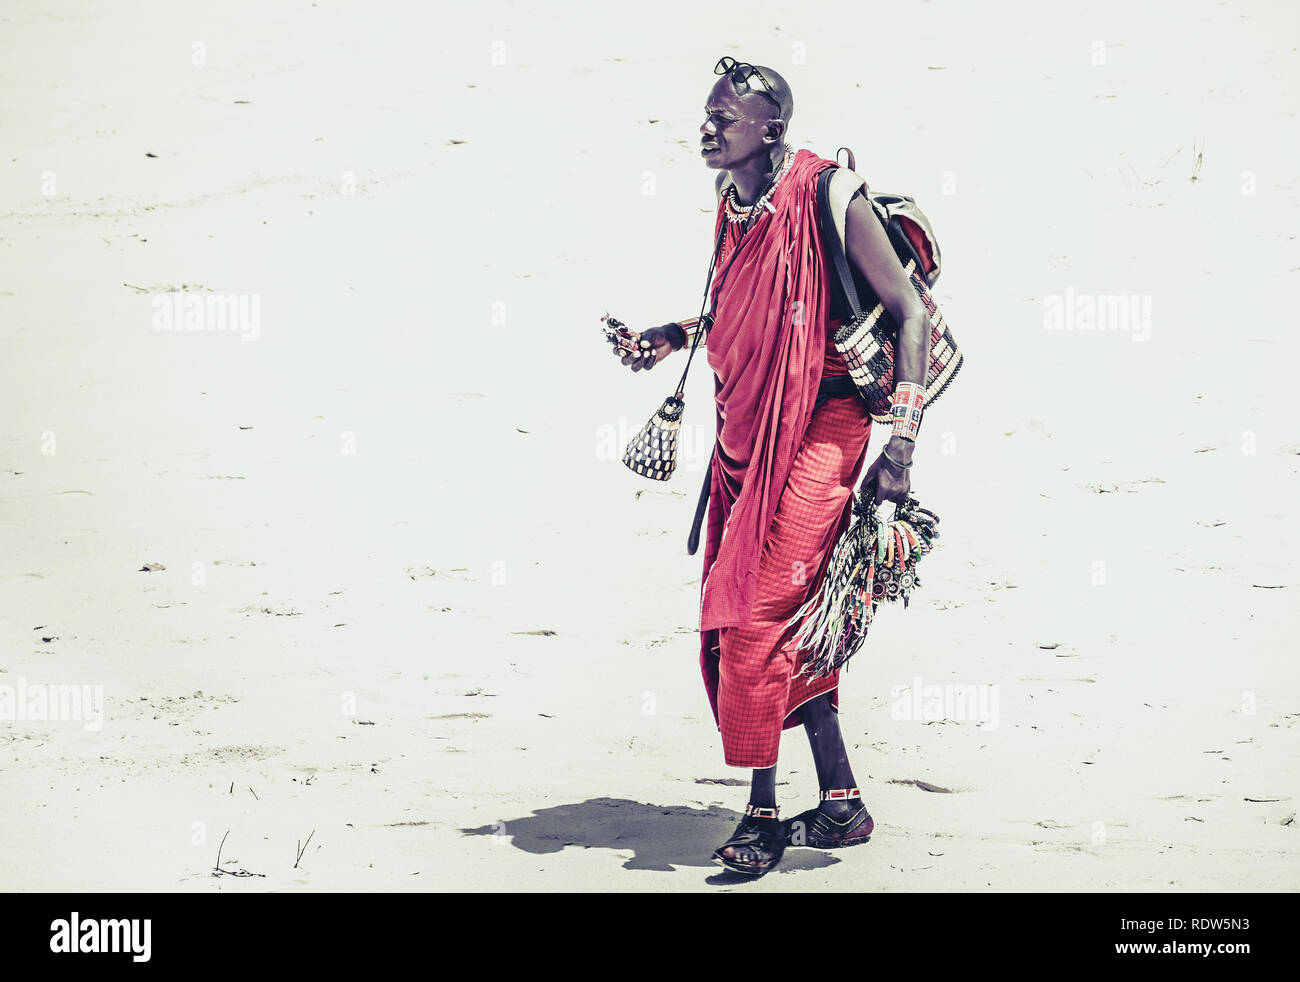 La plage de Diani, KENYA - 14 octobre 2018 : Unindentified African man wearing traditional Masai vêtements sur la plage de Diani, Kenya Banque D'Images